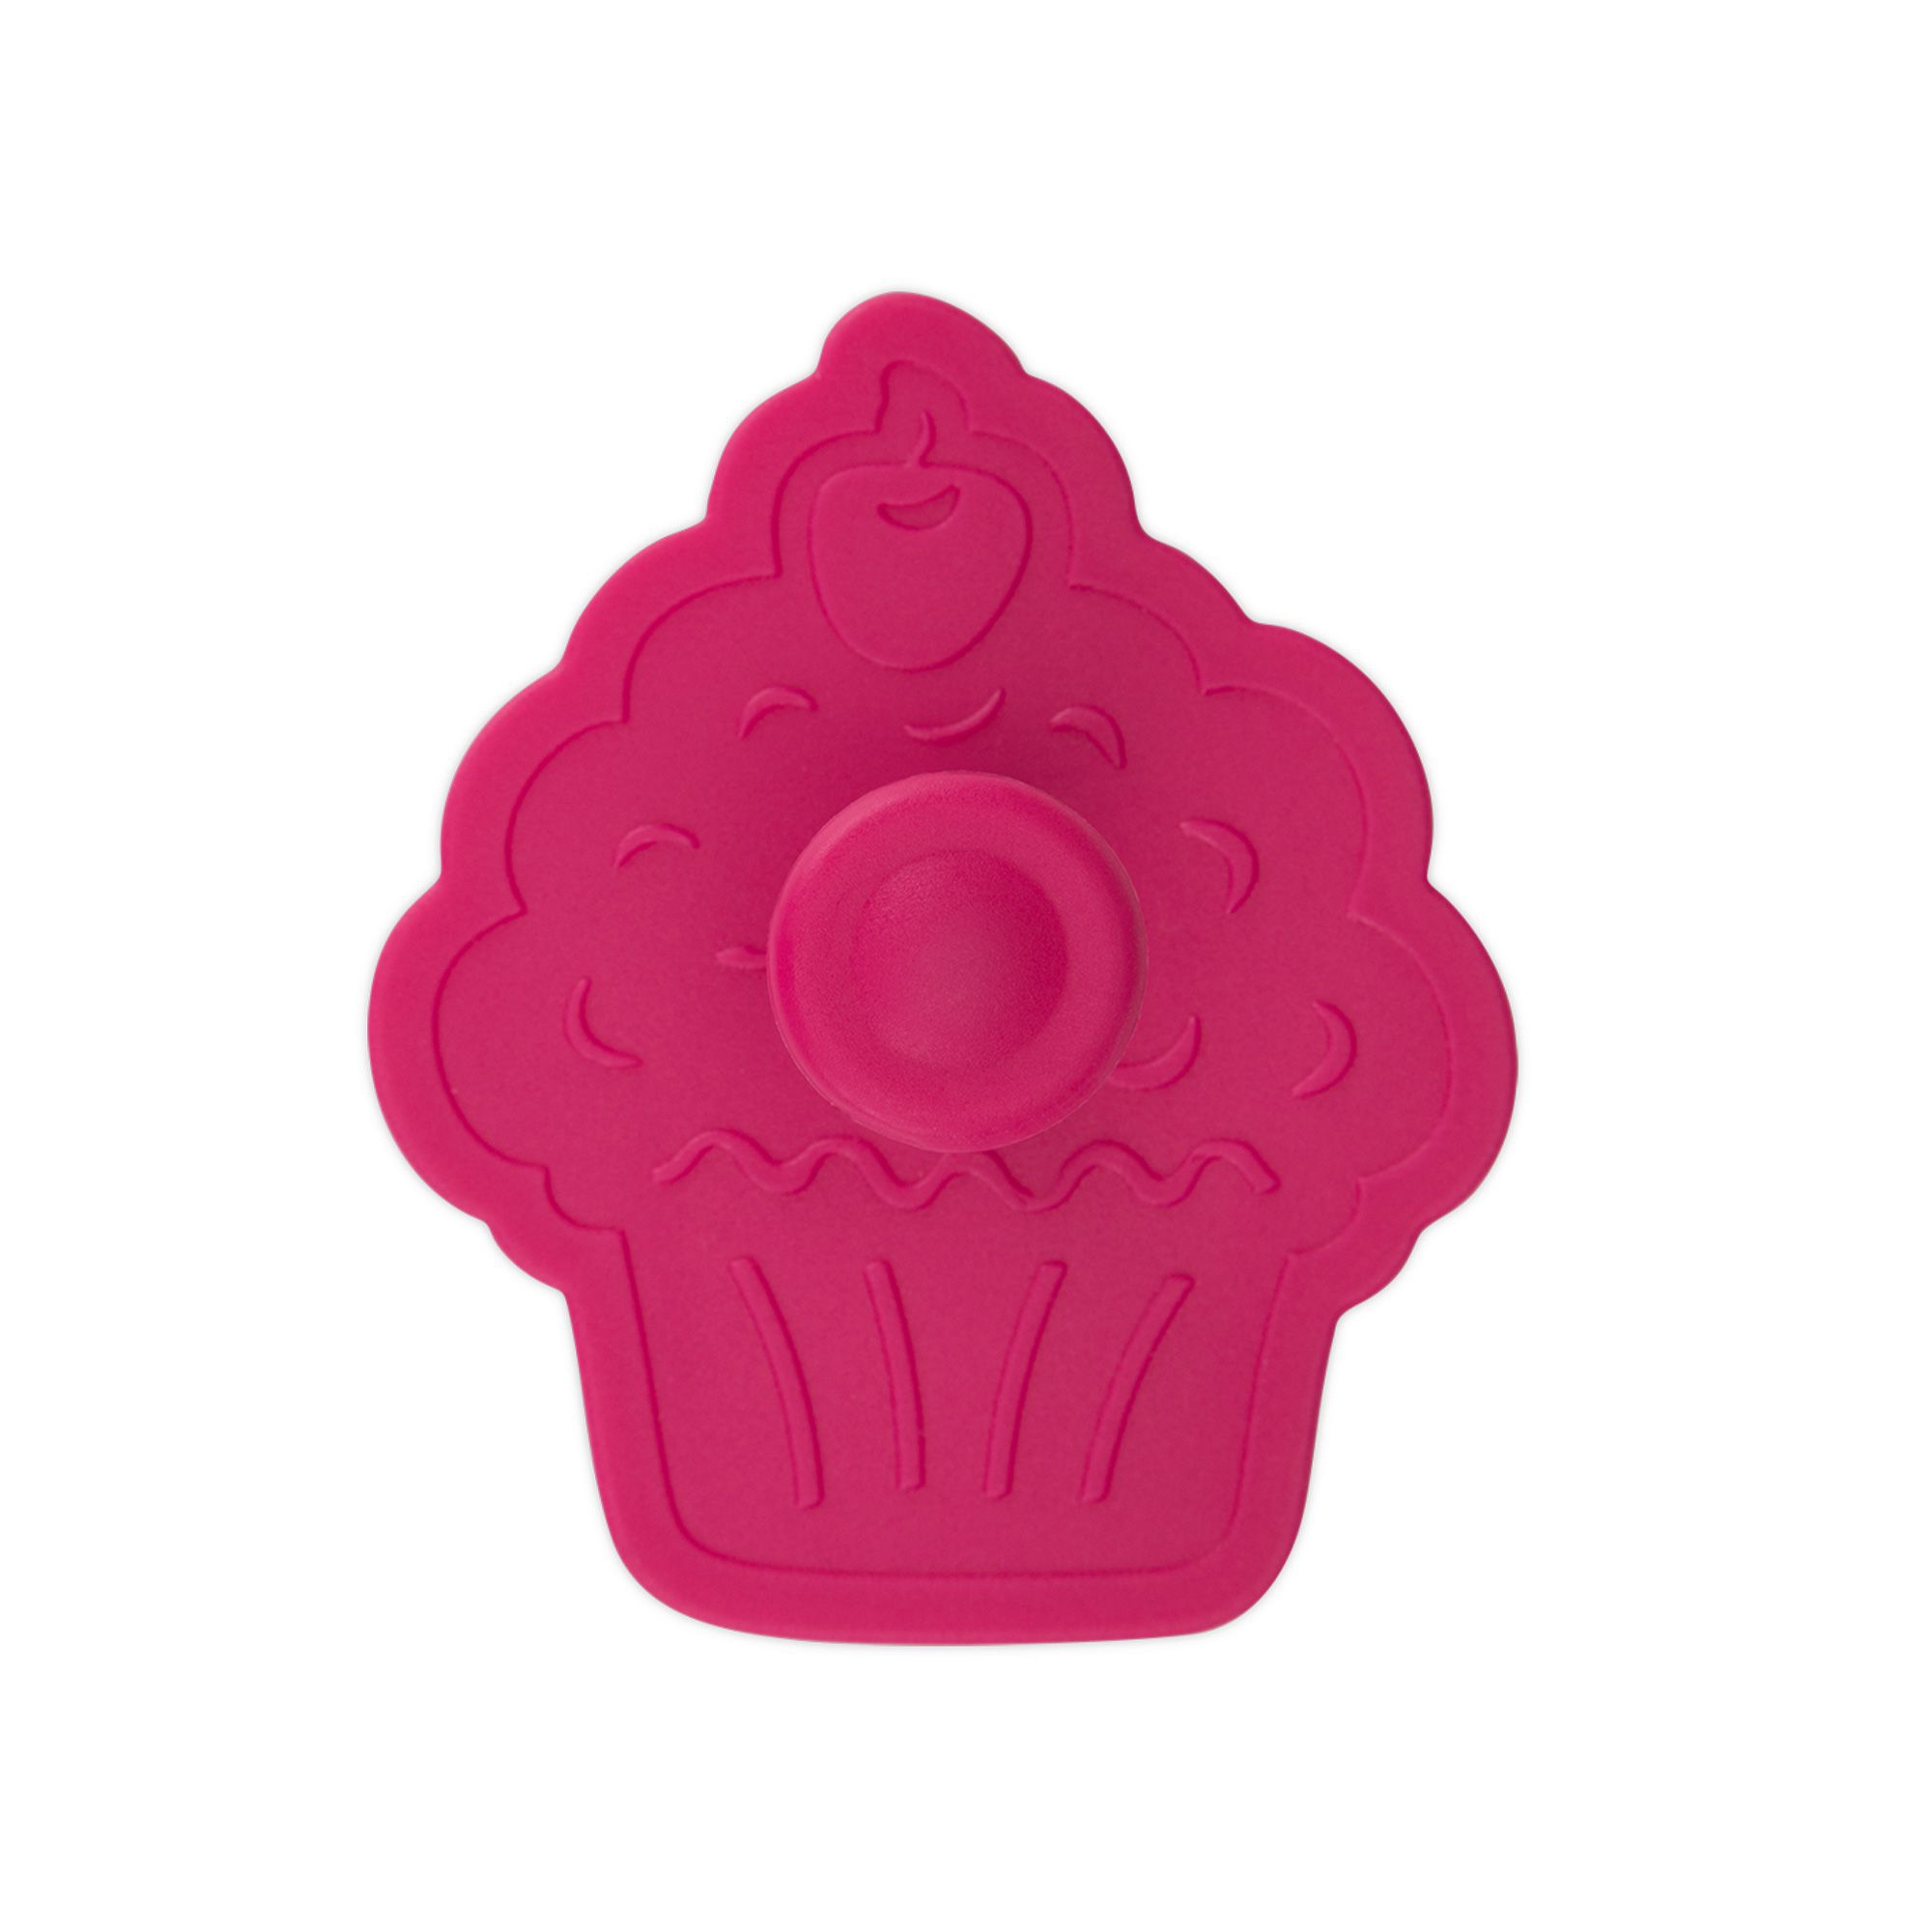 Städter - cookie cutter muffin 6 cm - pink